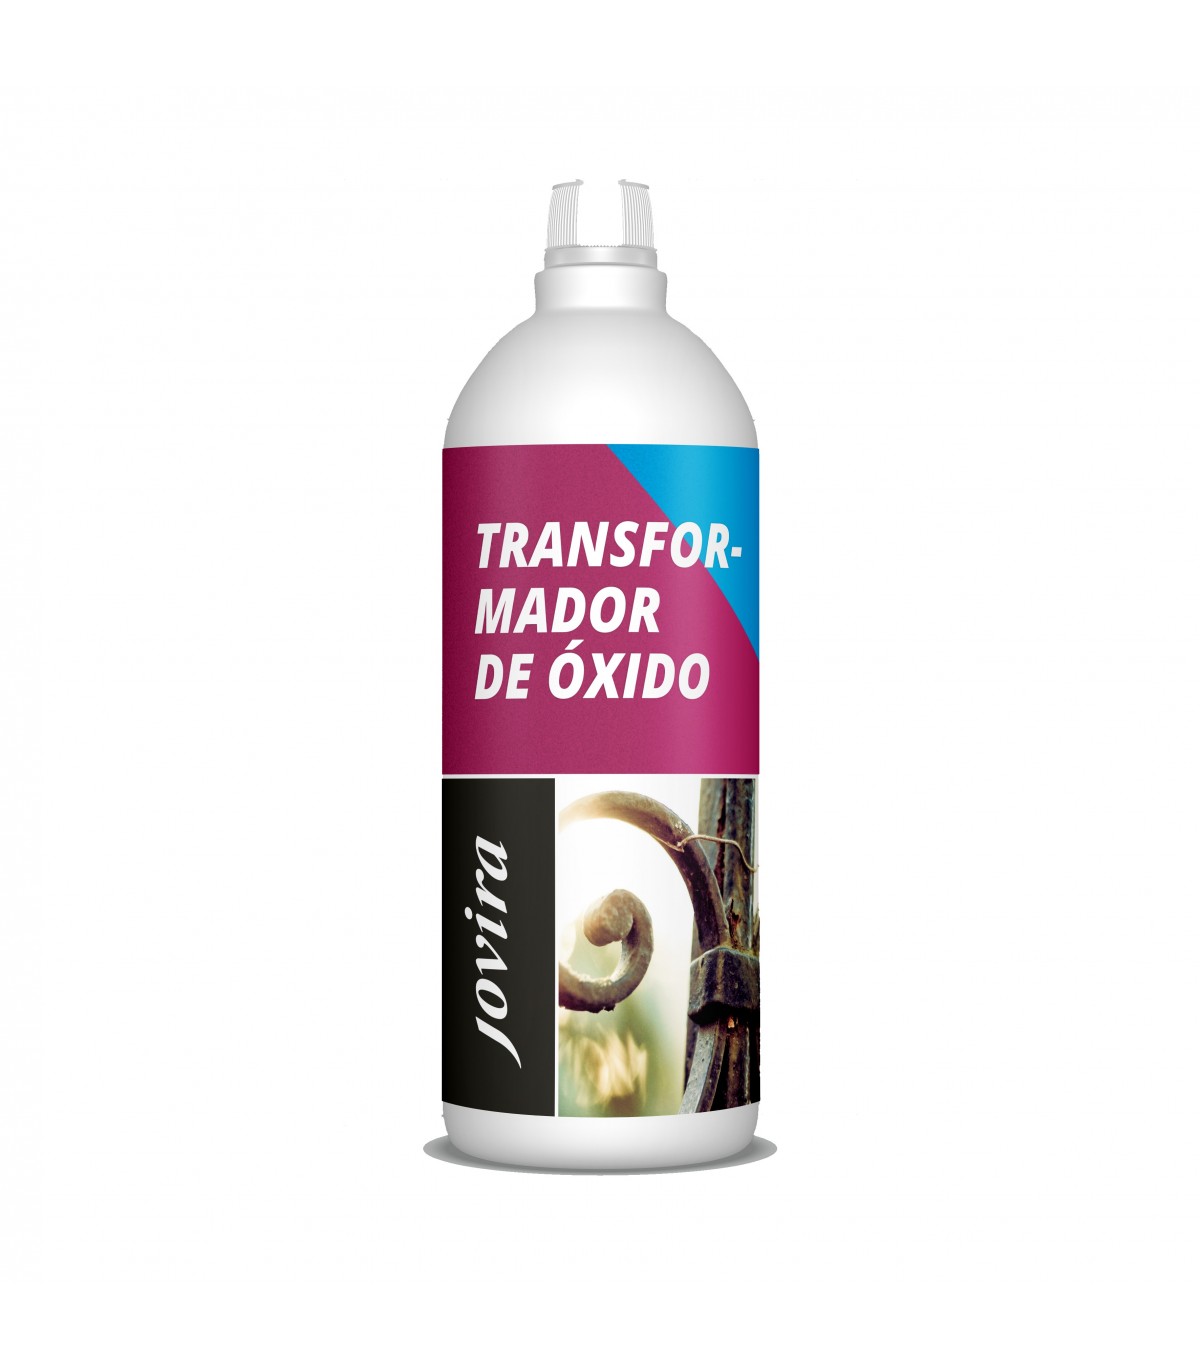 Transformador de oxido Chema – Grupo Carlitos